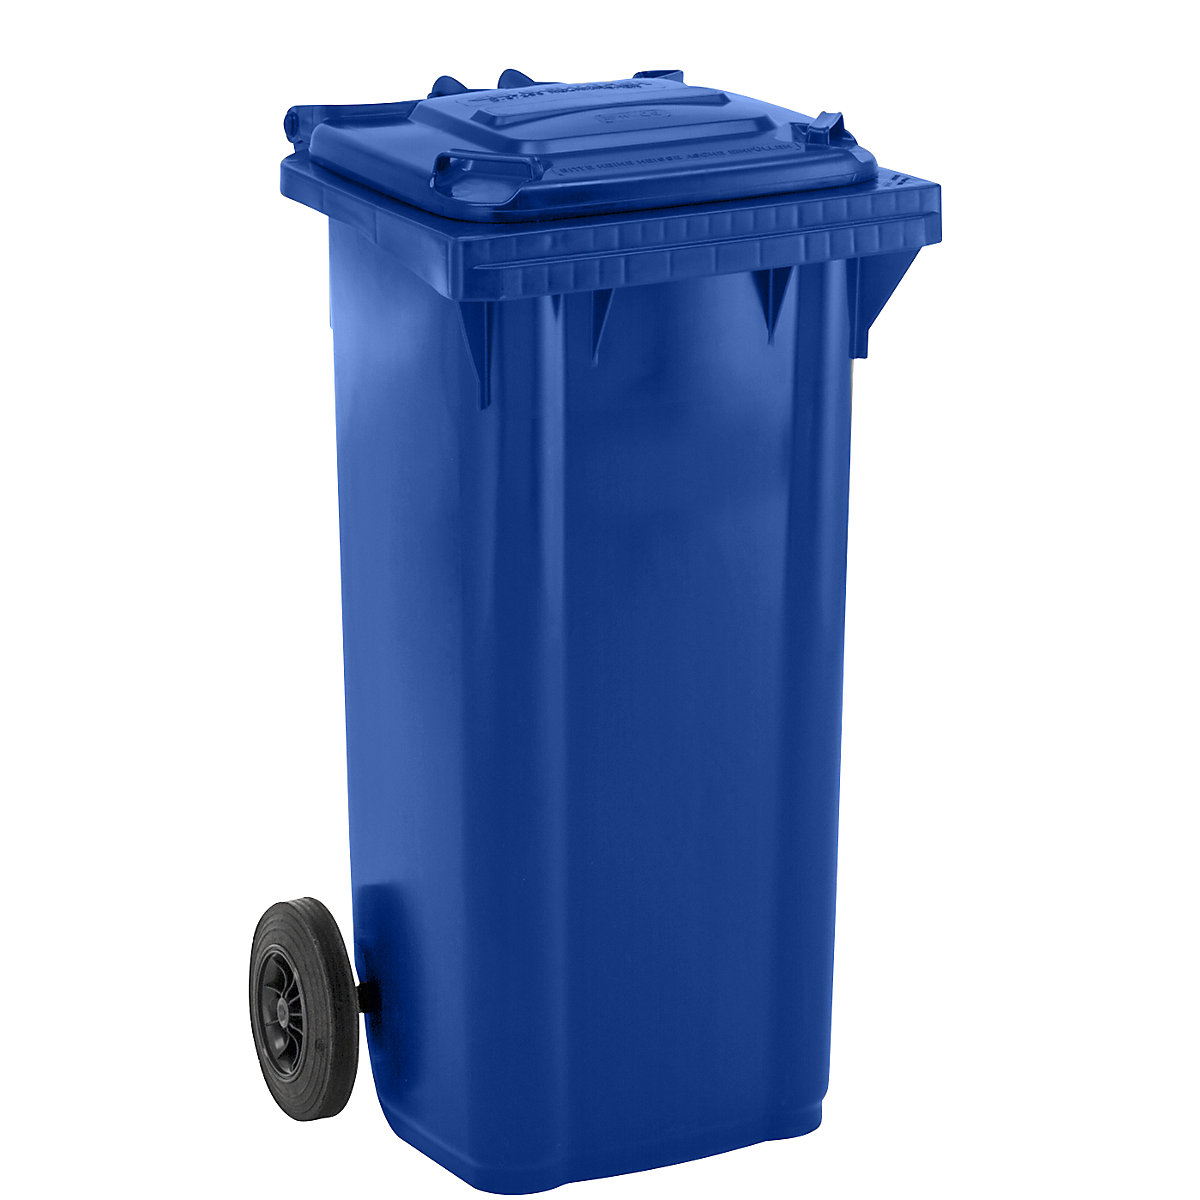 Pojemnik na odpady, z tworzywa, DIN EN 840 – eurokraft pro, poj. 120 l, szer. x wys. x głęb. 505 x 1005 x 555 mm, niebieskie, dostawa od 5 szt.